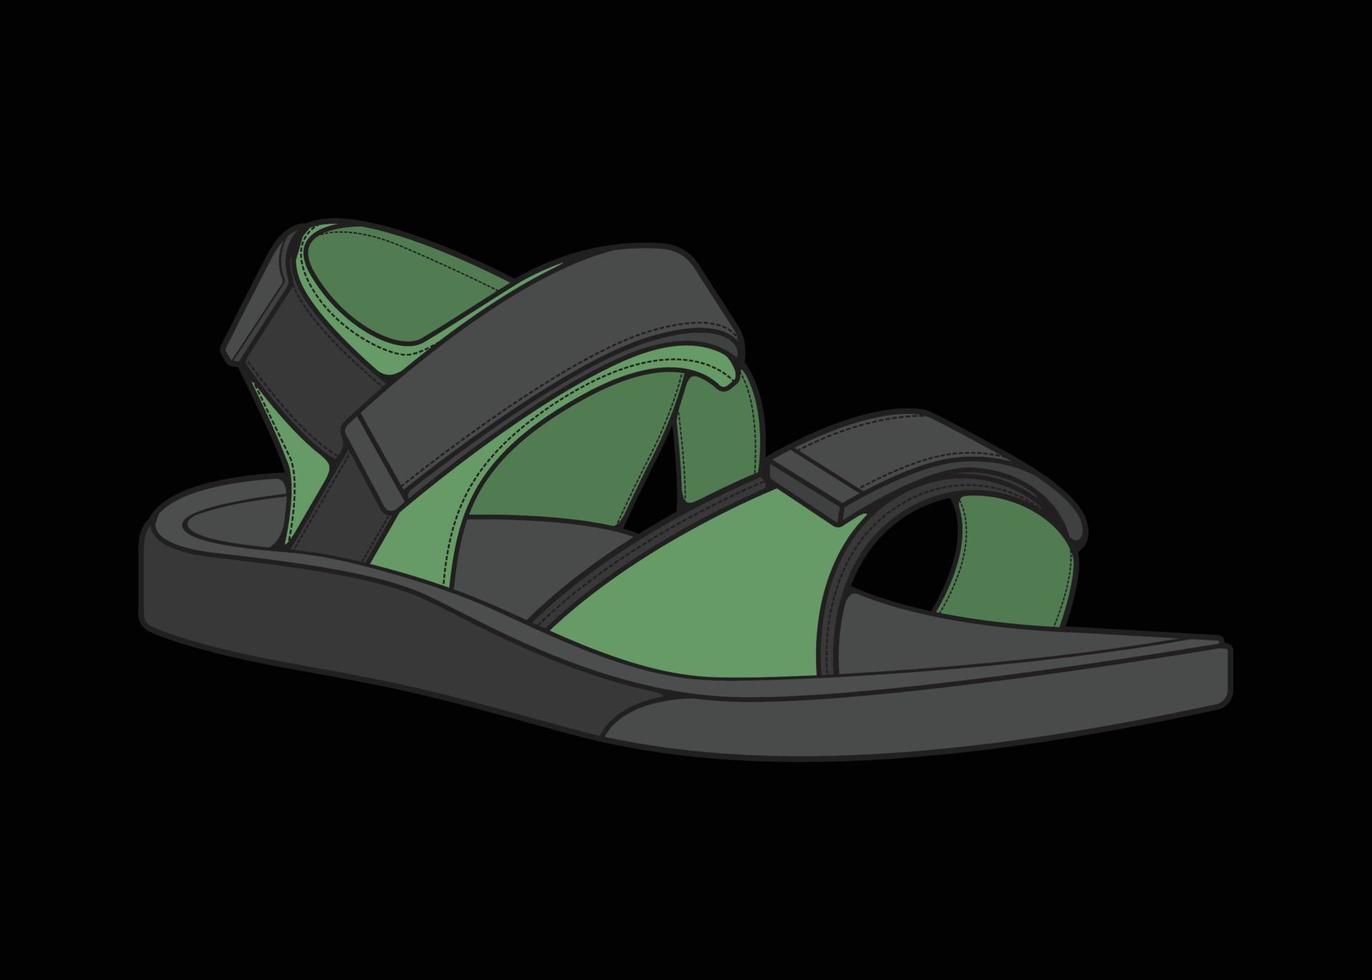 riem sandalen veelkleurige tekening vector, riem sandalen in een veelkleurige stijl, vector illustratie. met zwarte achtergrond